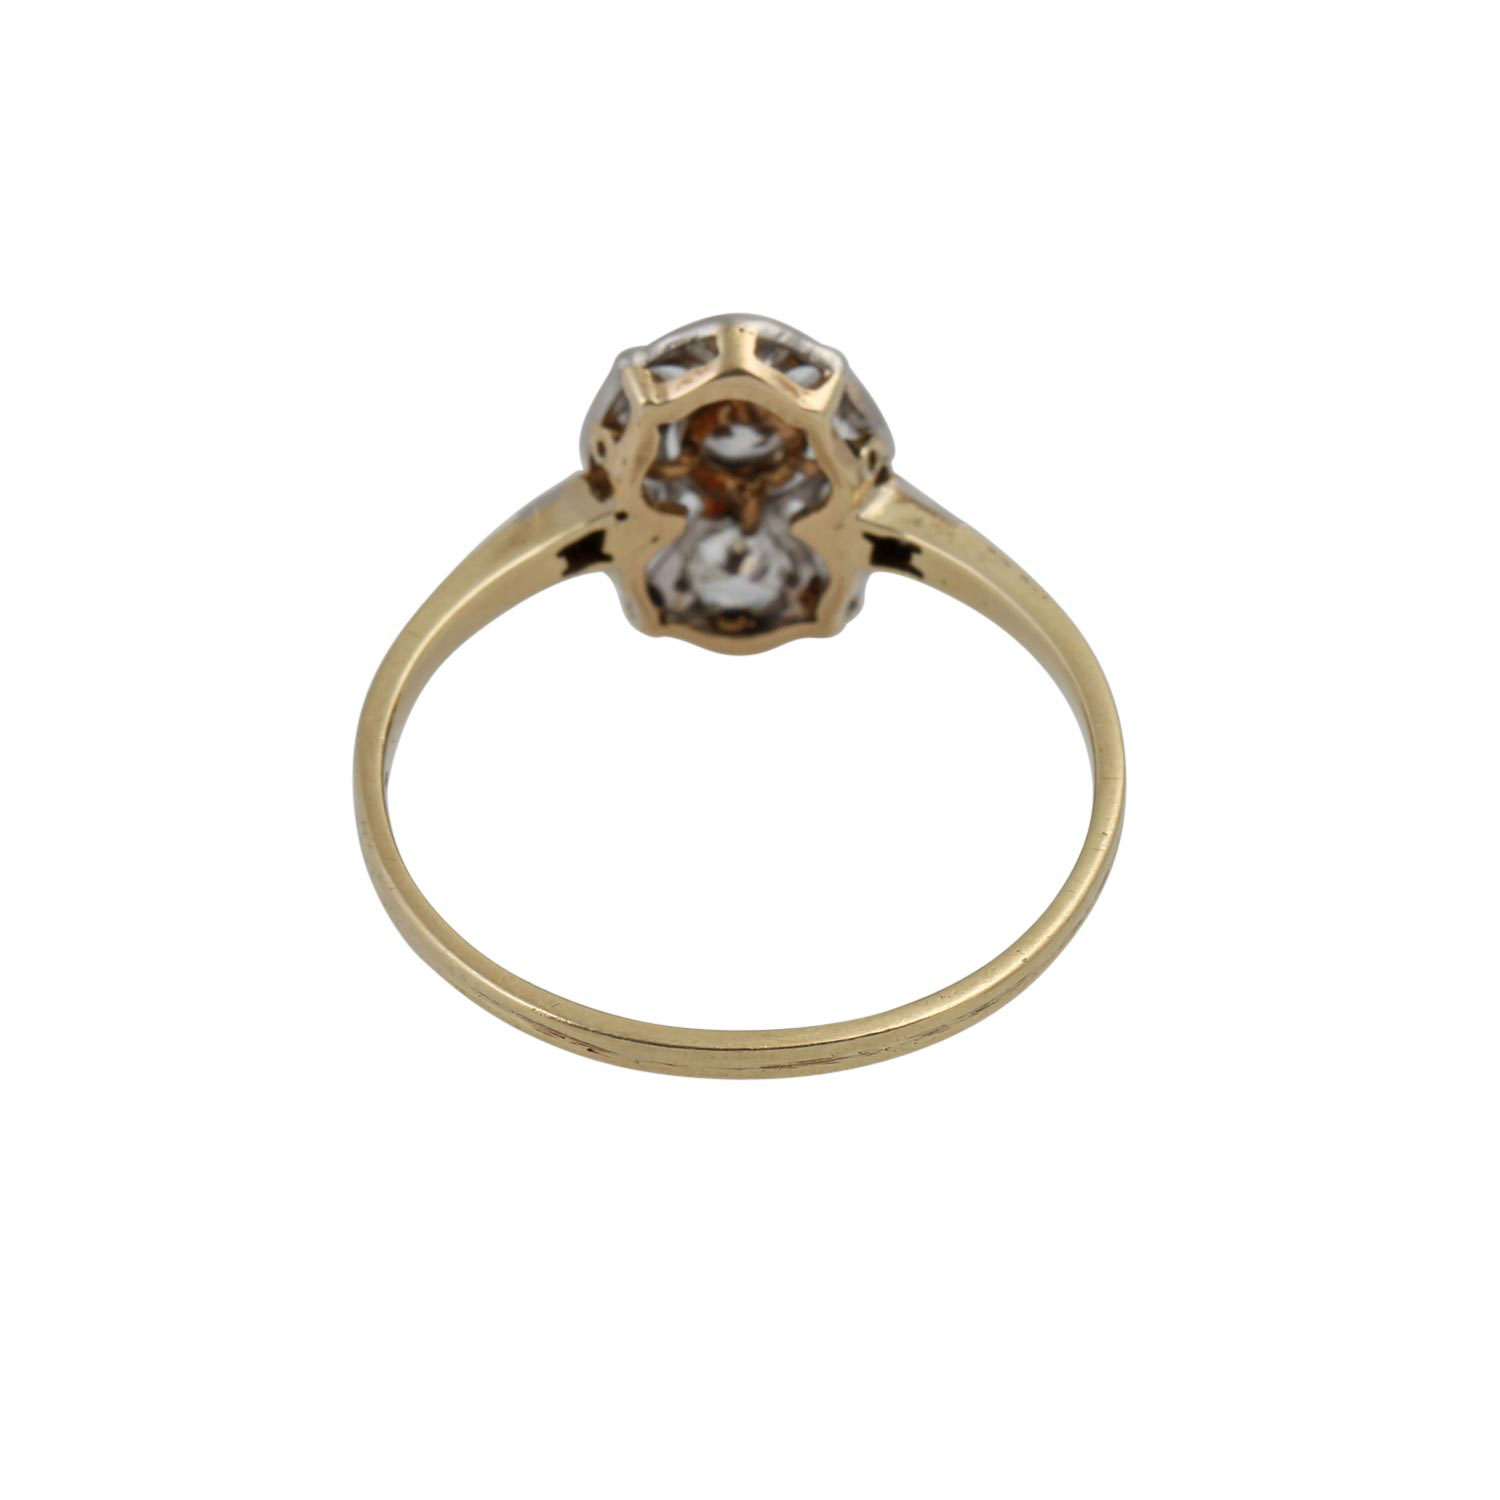 Art Déco zarter Ring mit Altschliffdiamanten von zus. ca. 0,25 ct, - Image 4 of 4